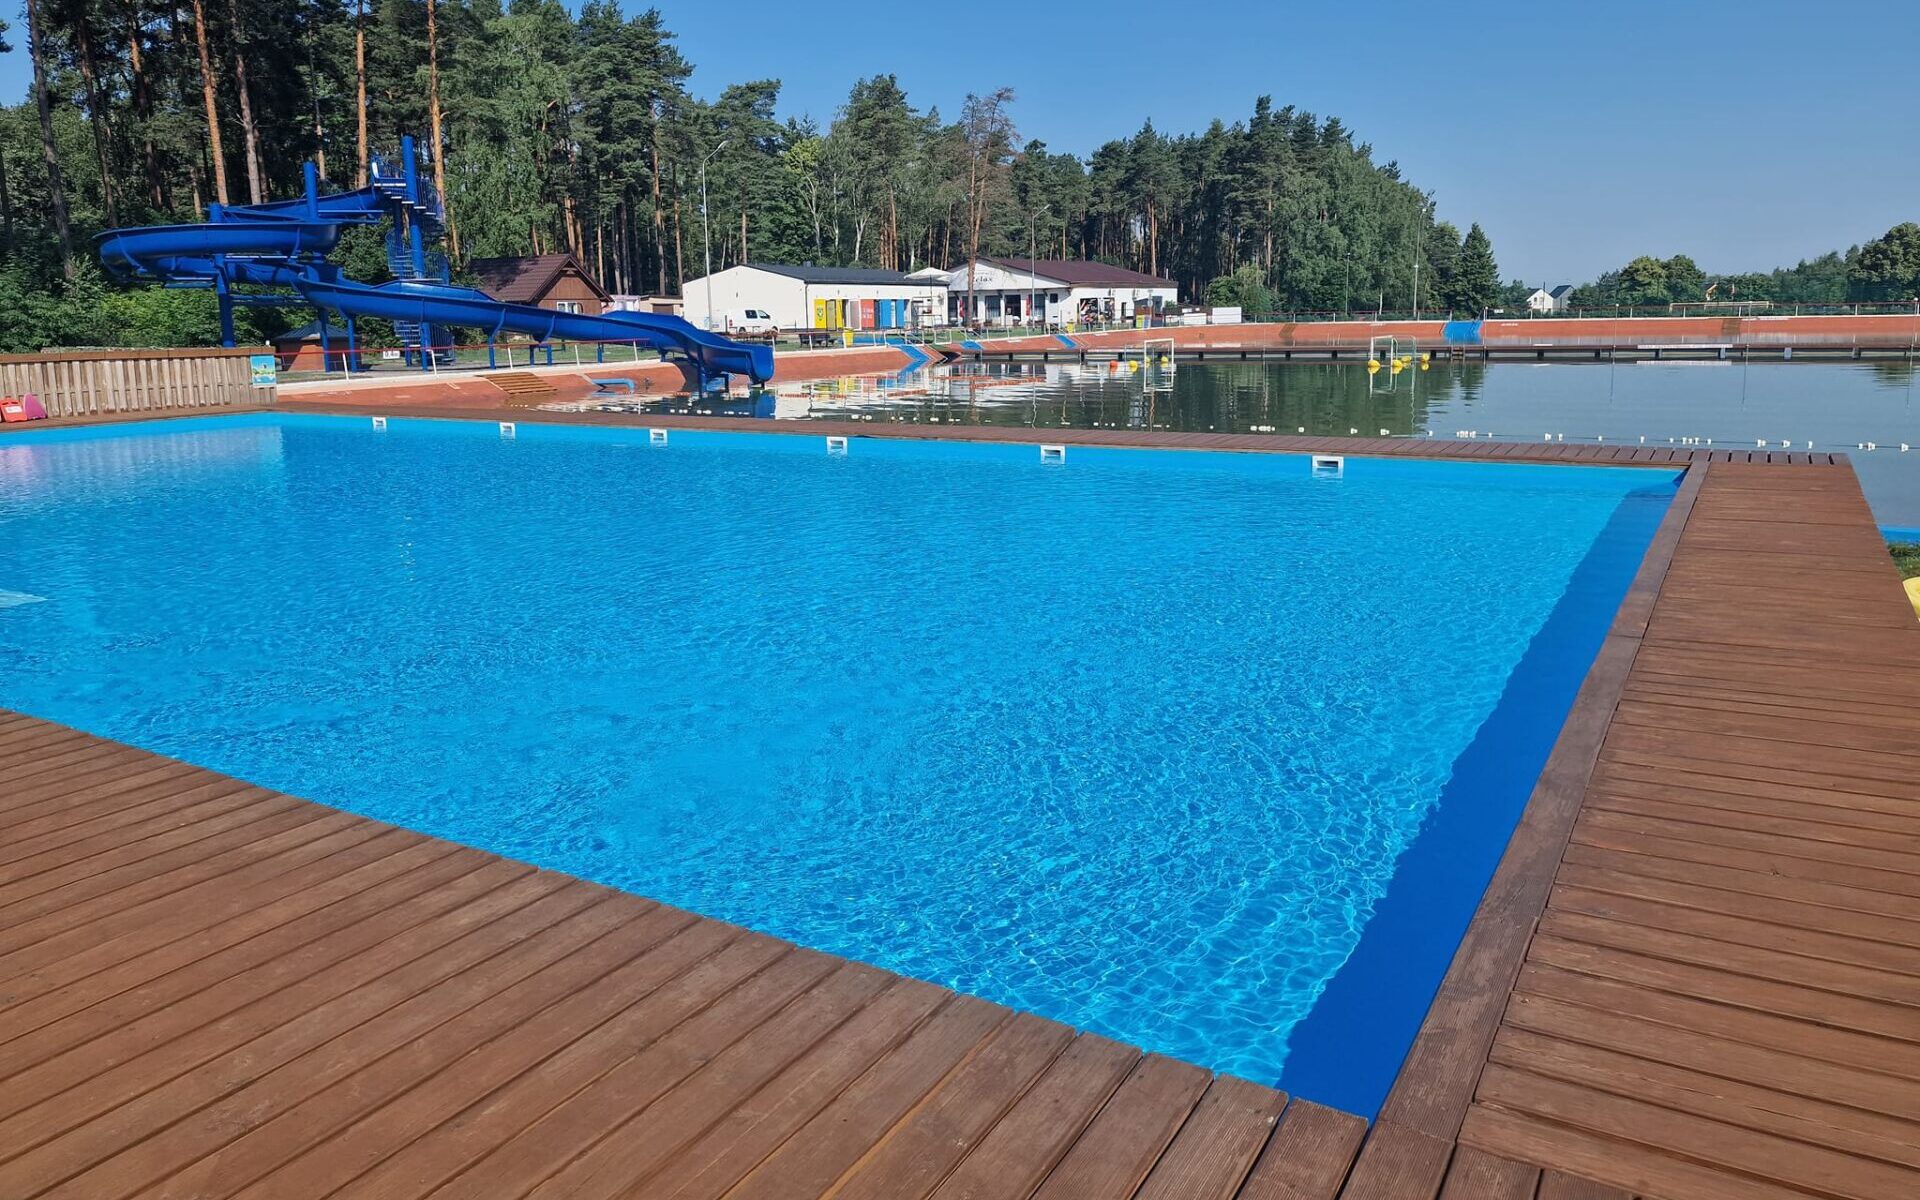 Kąpielisko Karłów - miejsce warte odwiedzenia w weekend